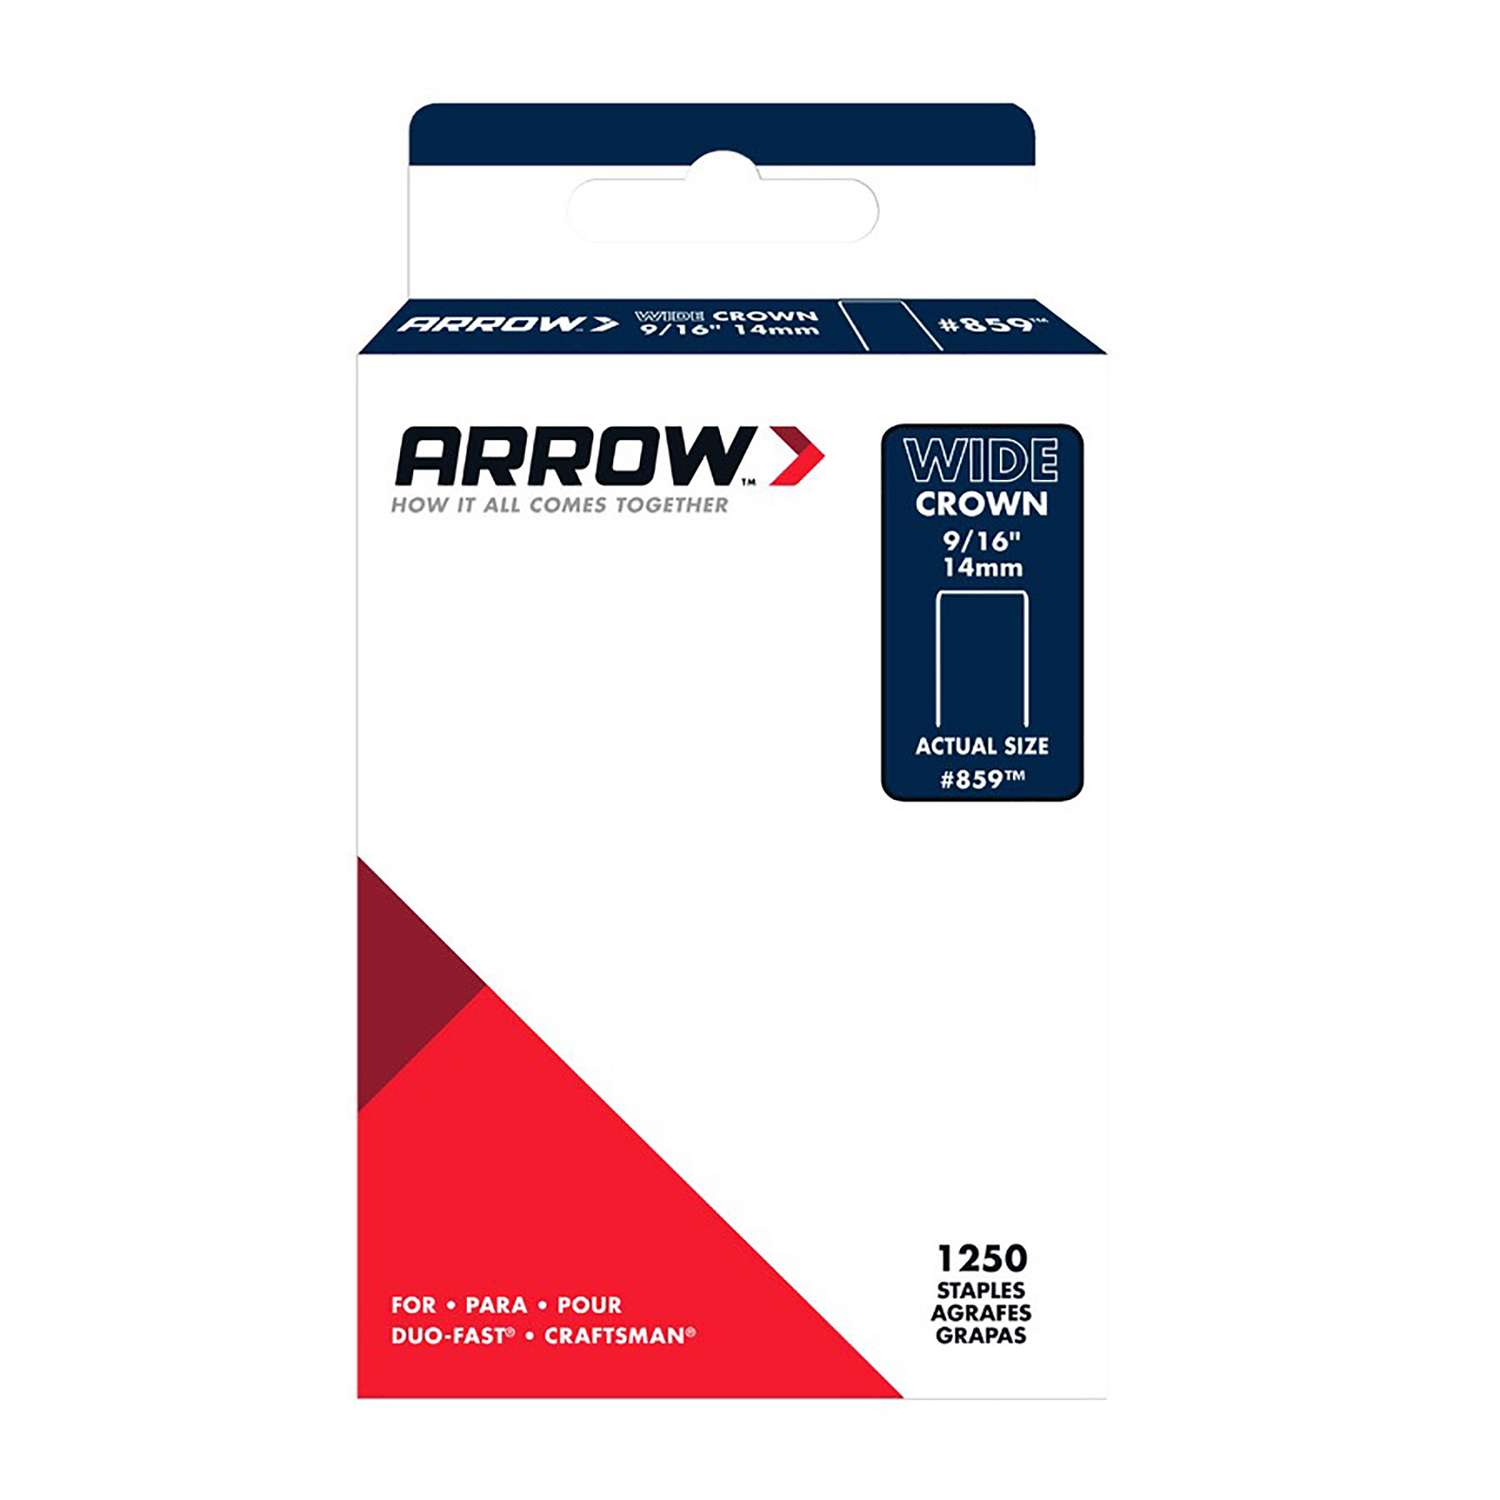 5000 PACK Arrow Fastener 856 Duo-Fast Wide Crown 5000 Series 3/8" Staples HR 